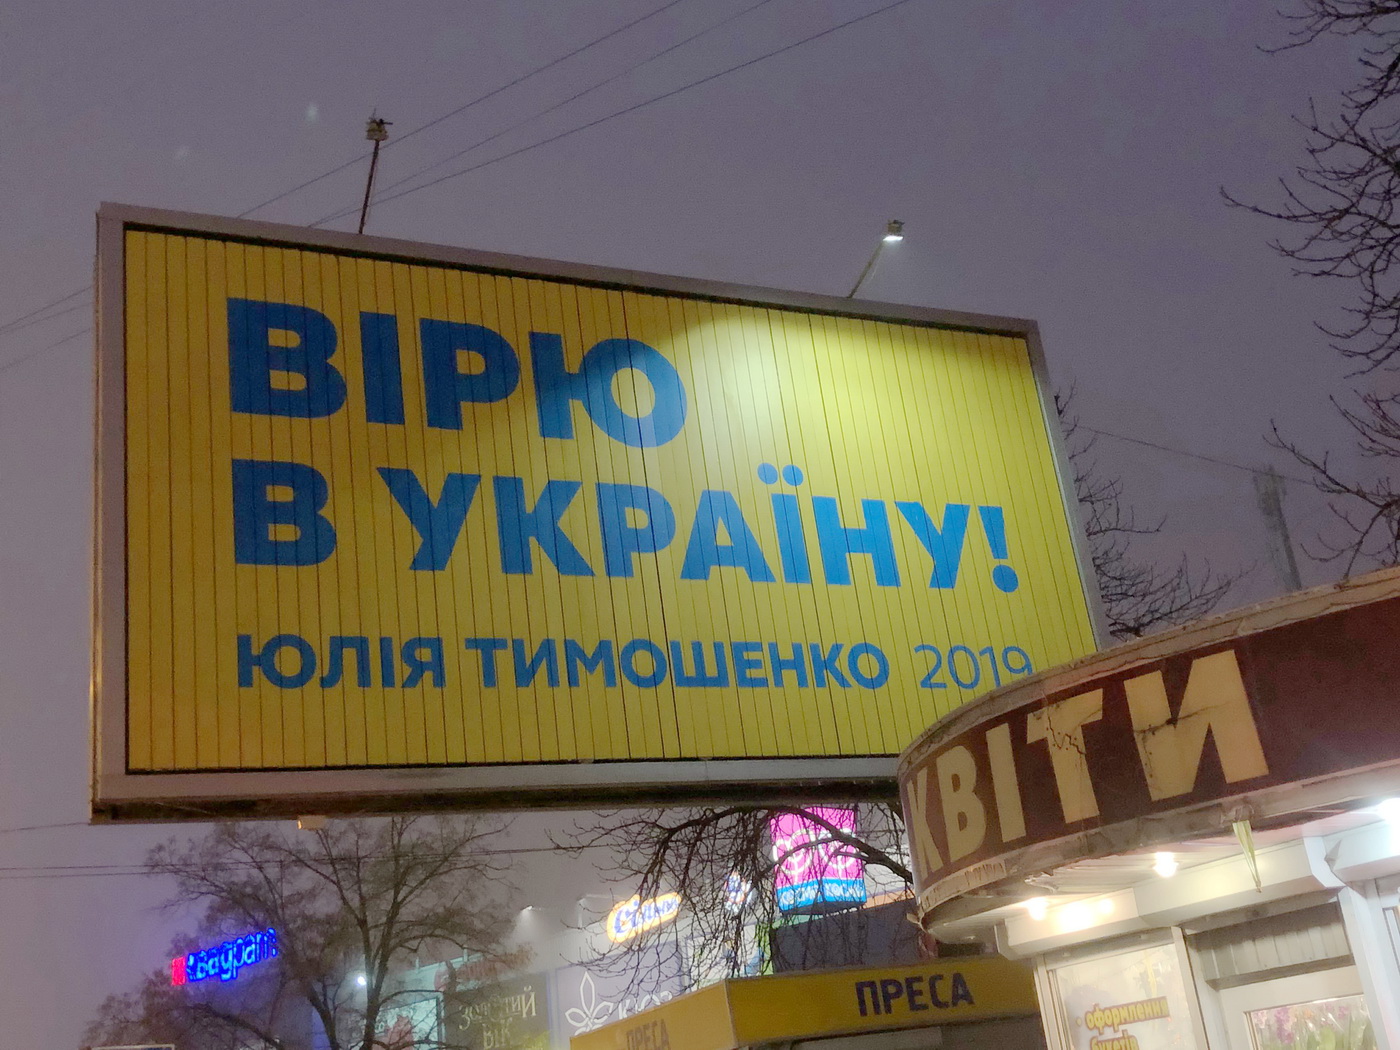 07 02 2019 Kyiv bilbordy tymoshenko hnata jury